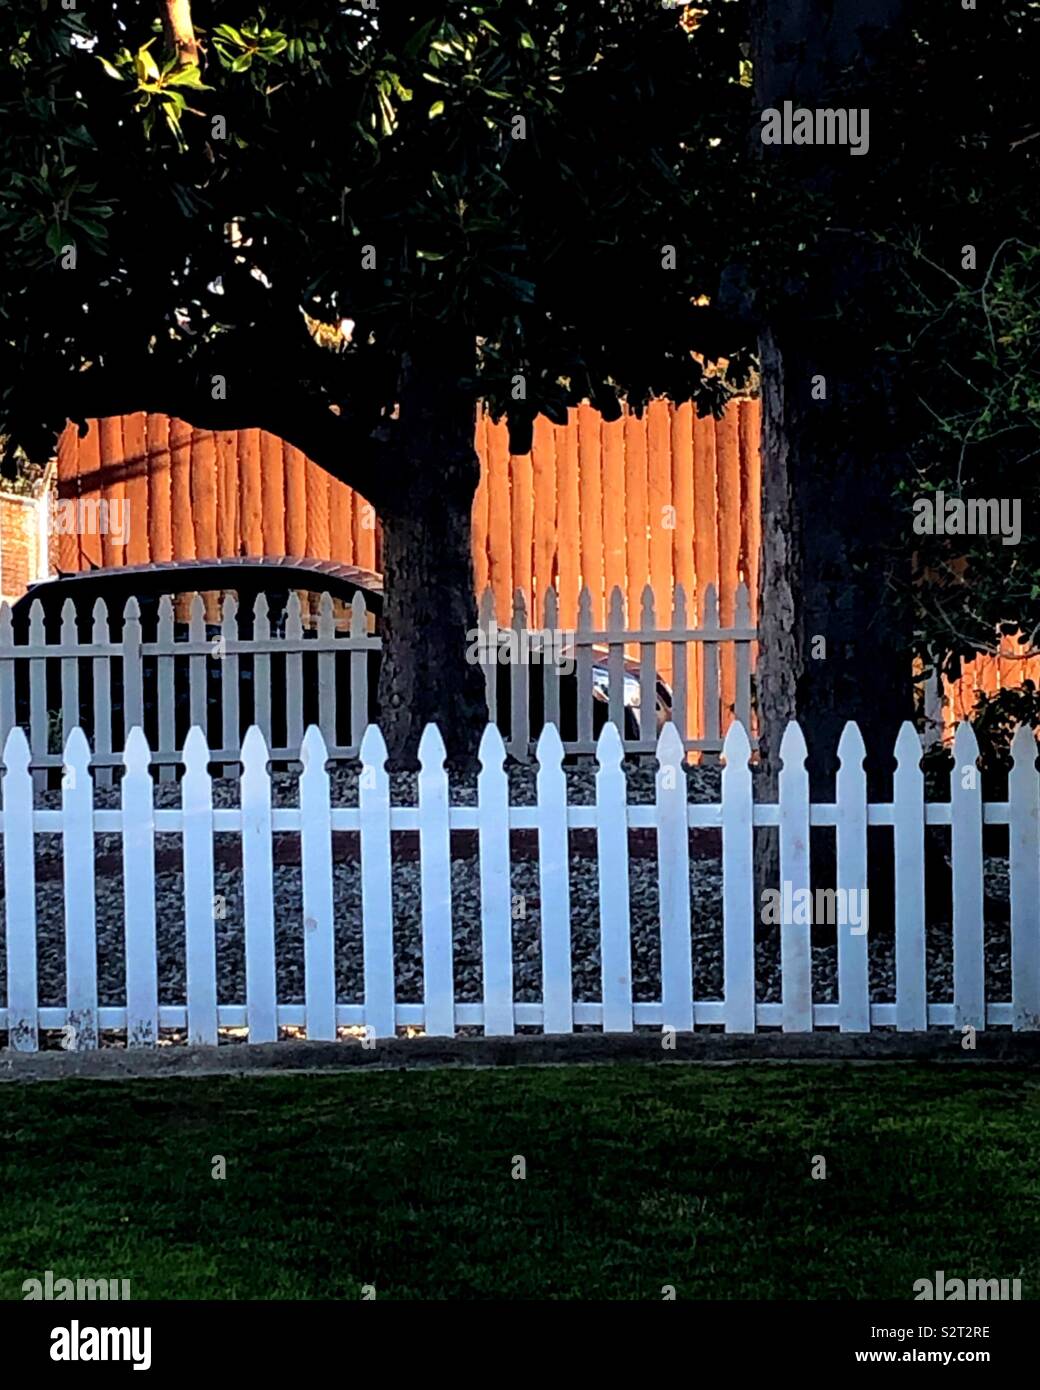 Einen ruhigen Abend Sonnenuntergang spiegelt auf einem Zaun hinter einer weißen Lattenzaun. Dies ist suburbanen Lebens von seiner besten Seite. Stockfoto